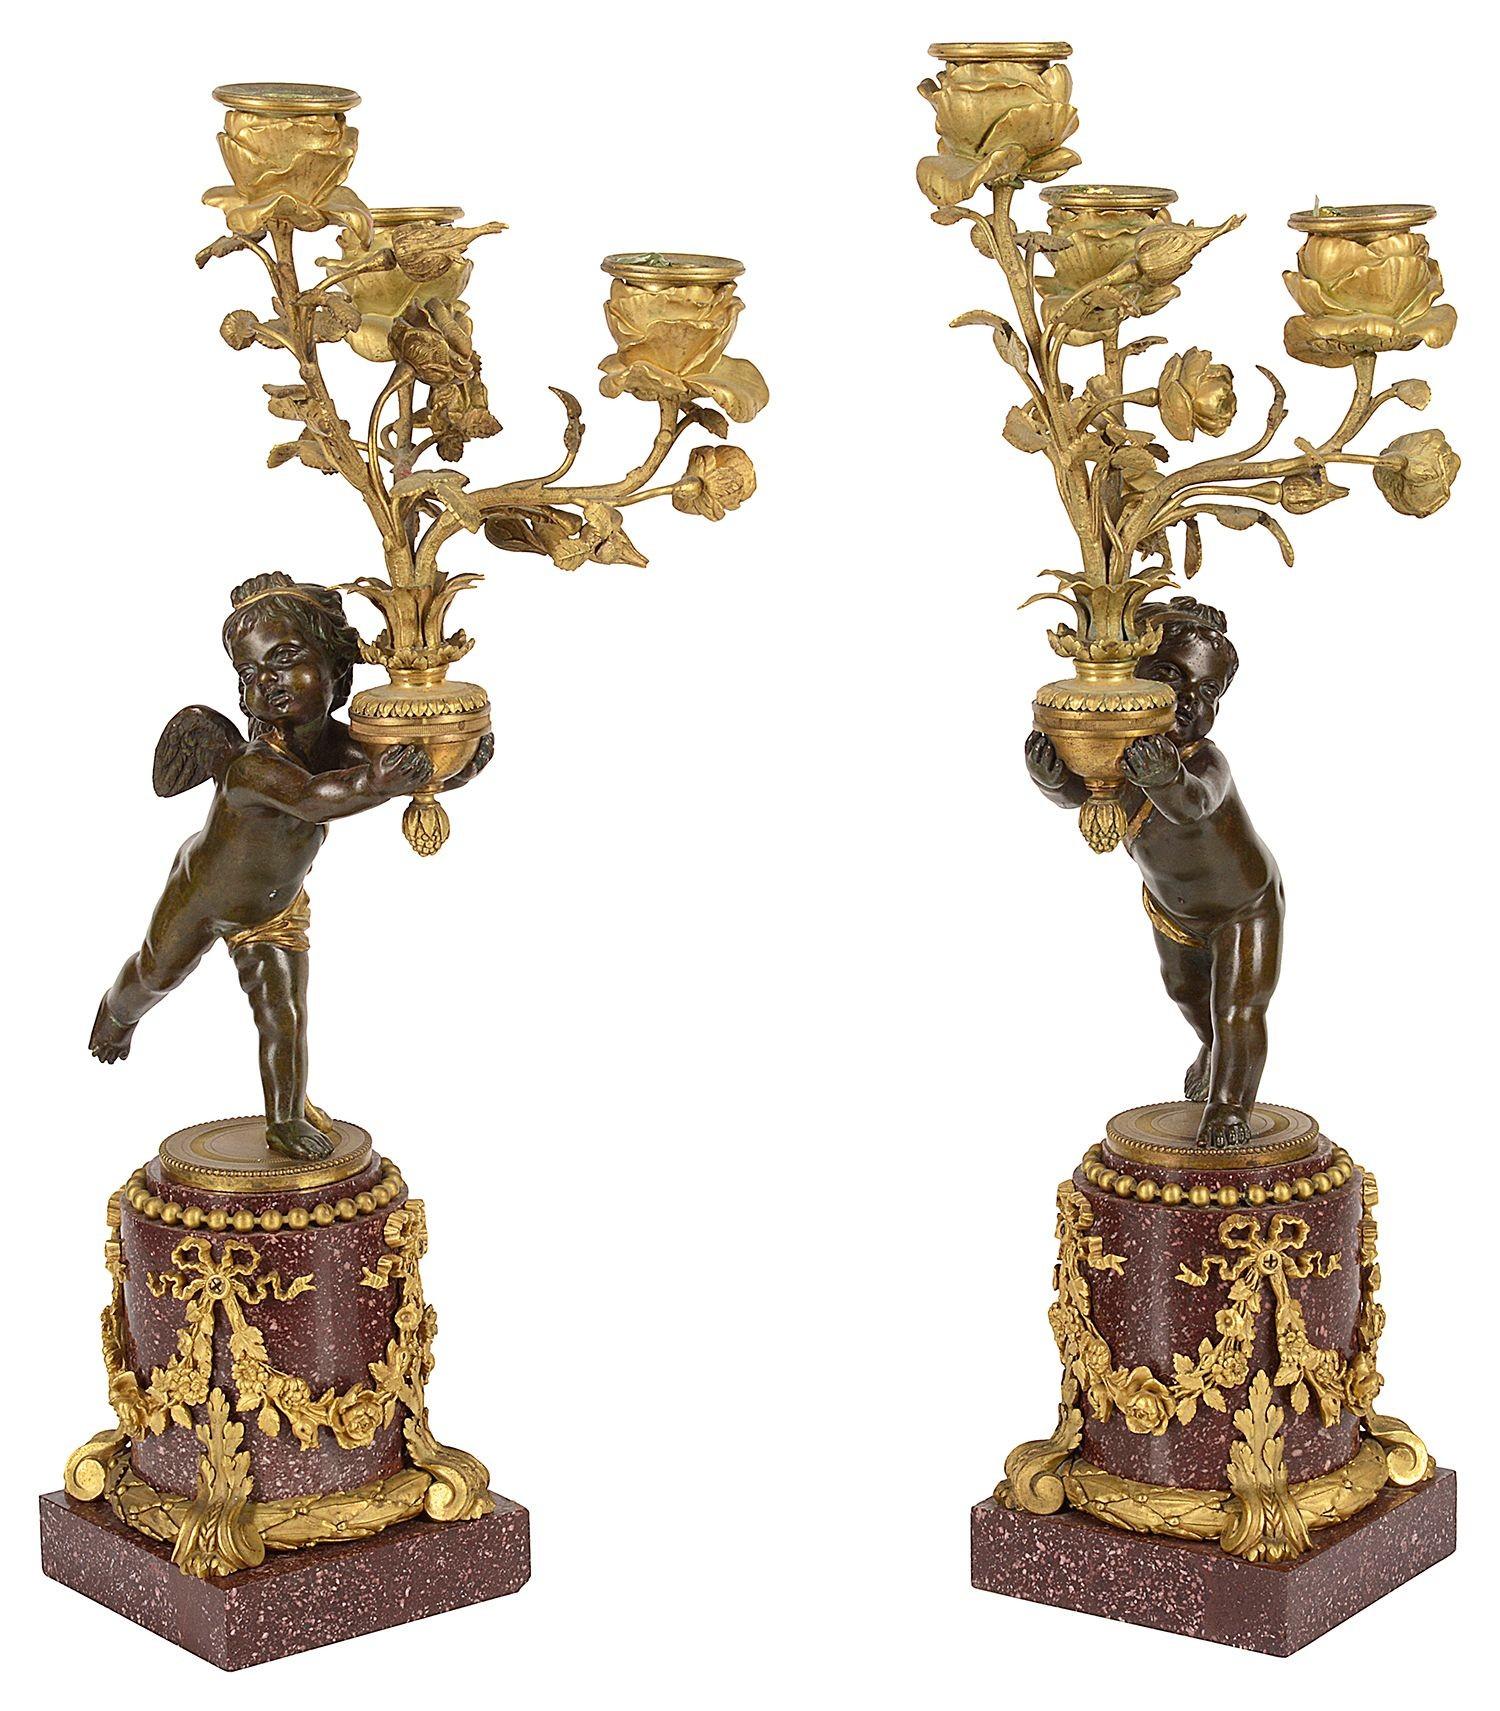 Une paire rare et de qualité de bronze patiné et doré du 19ème siècle.   chérubins, chacun tenant un candélabre à trois branches et à rinceaux, avec des appliques florales, le tout reposant sur de merveilleuses bases en porphyre avec des montures en